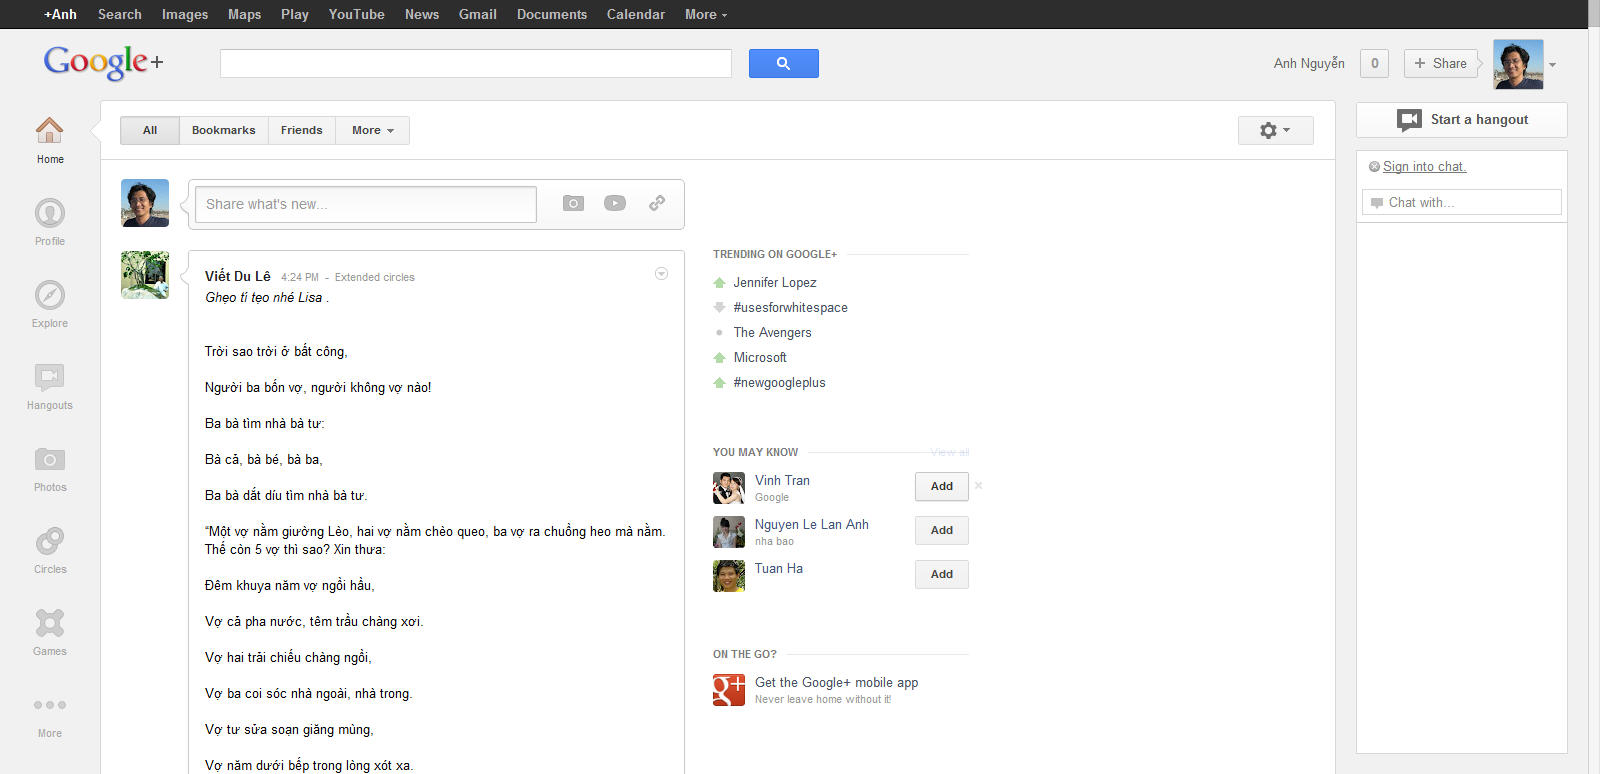 Mạng xã hội Google+ khi xem trên màn hình có độ phân giải rộng